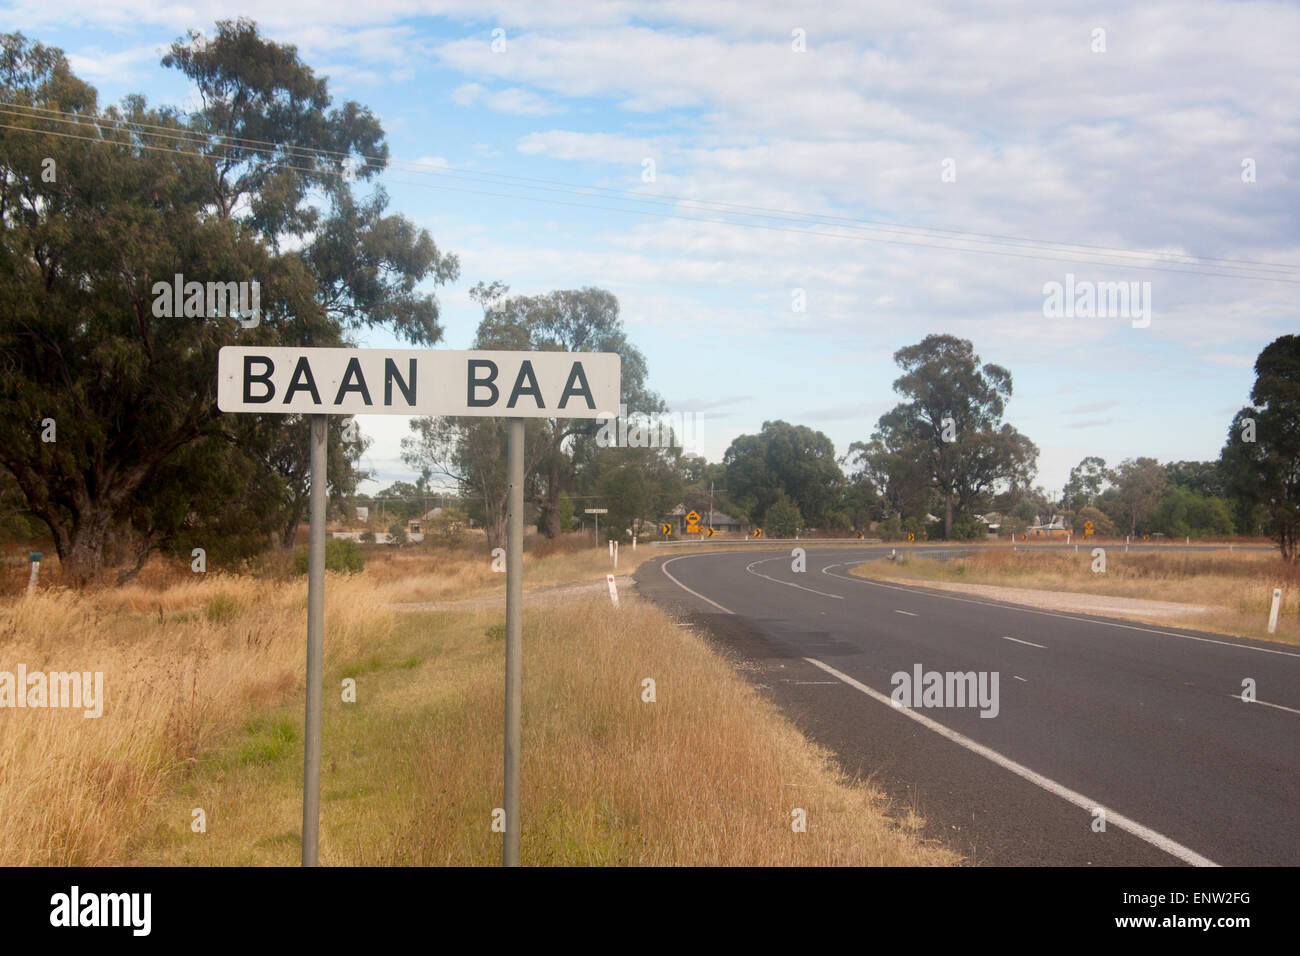 Baan Baa Humoristique Drôle Insolite Insolite amusant nom de lieu Village de Nouvelle Galles du sud , Australie Banque D'Images